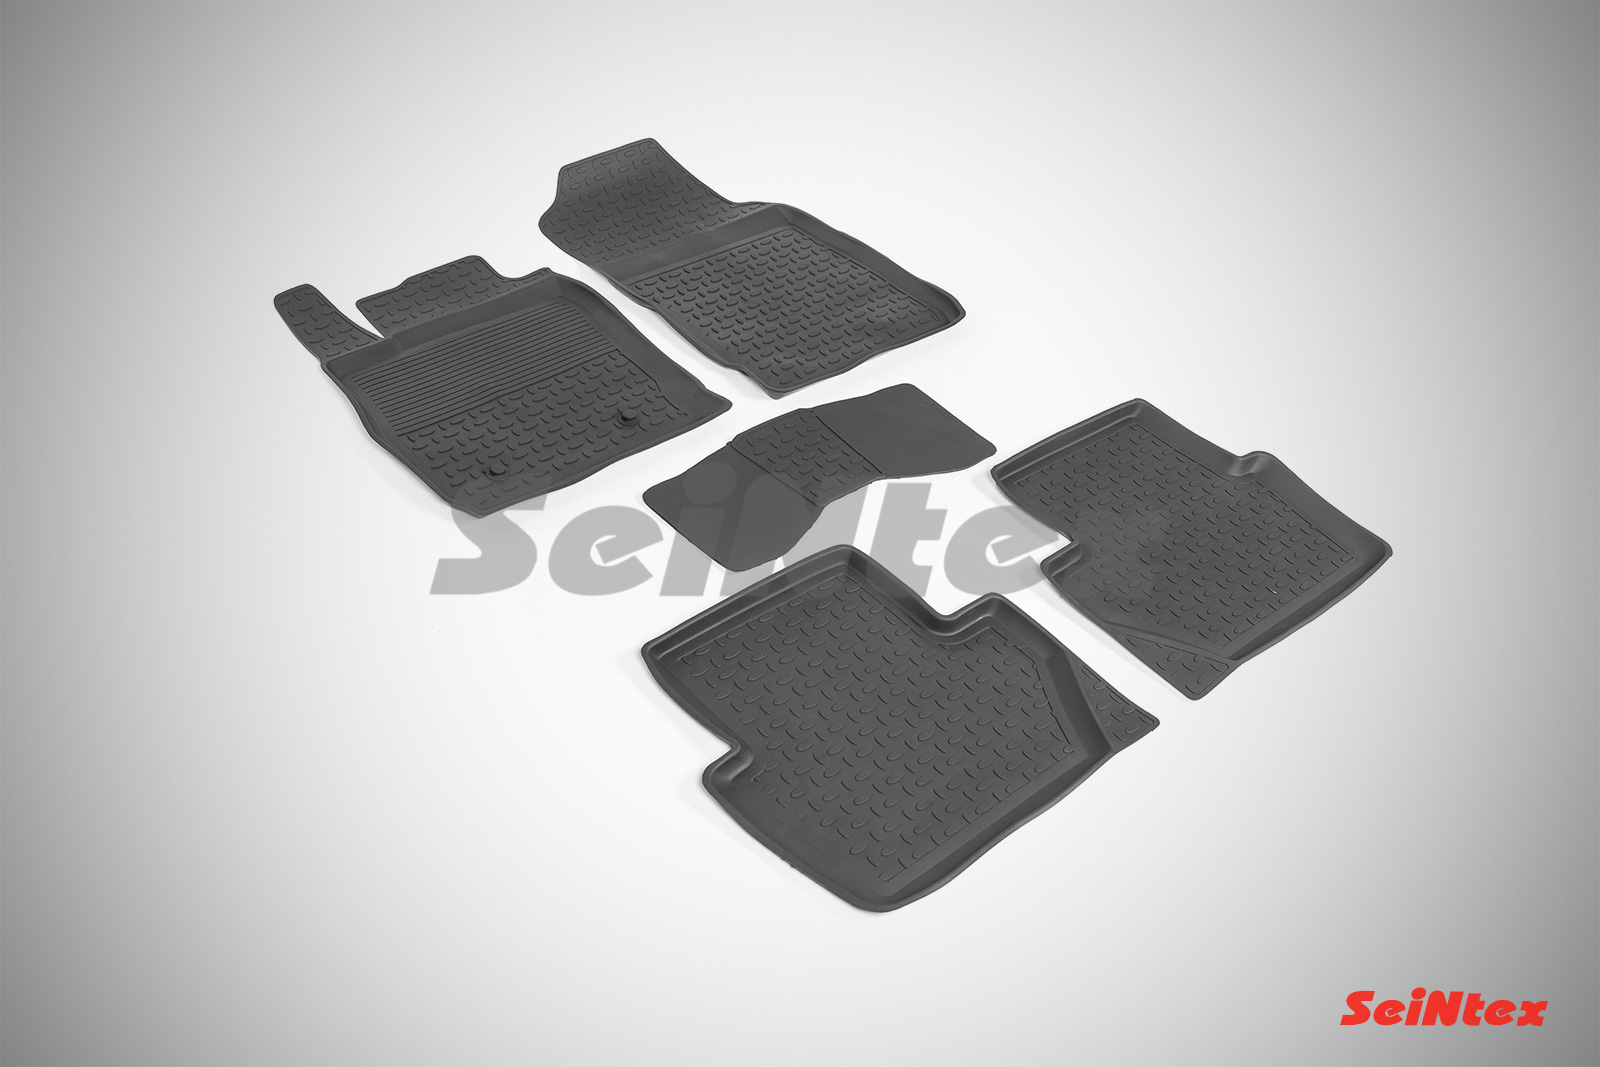 Резиновые коврики с высоким бортом для Ford Ecosport 2014-2017